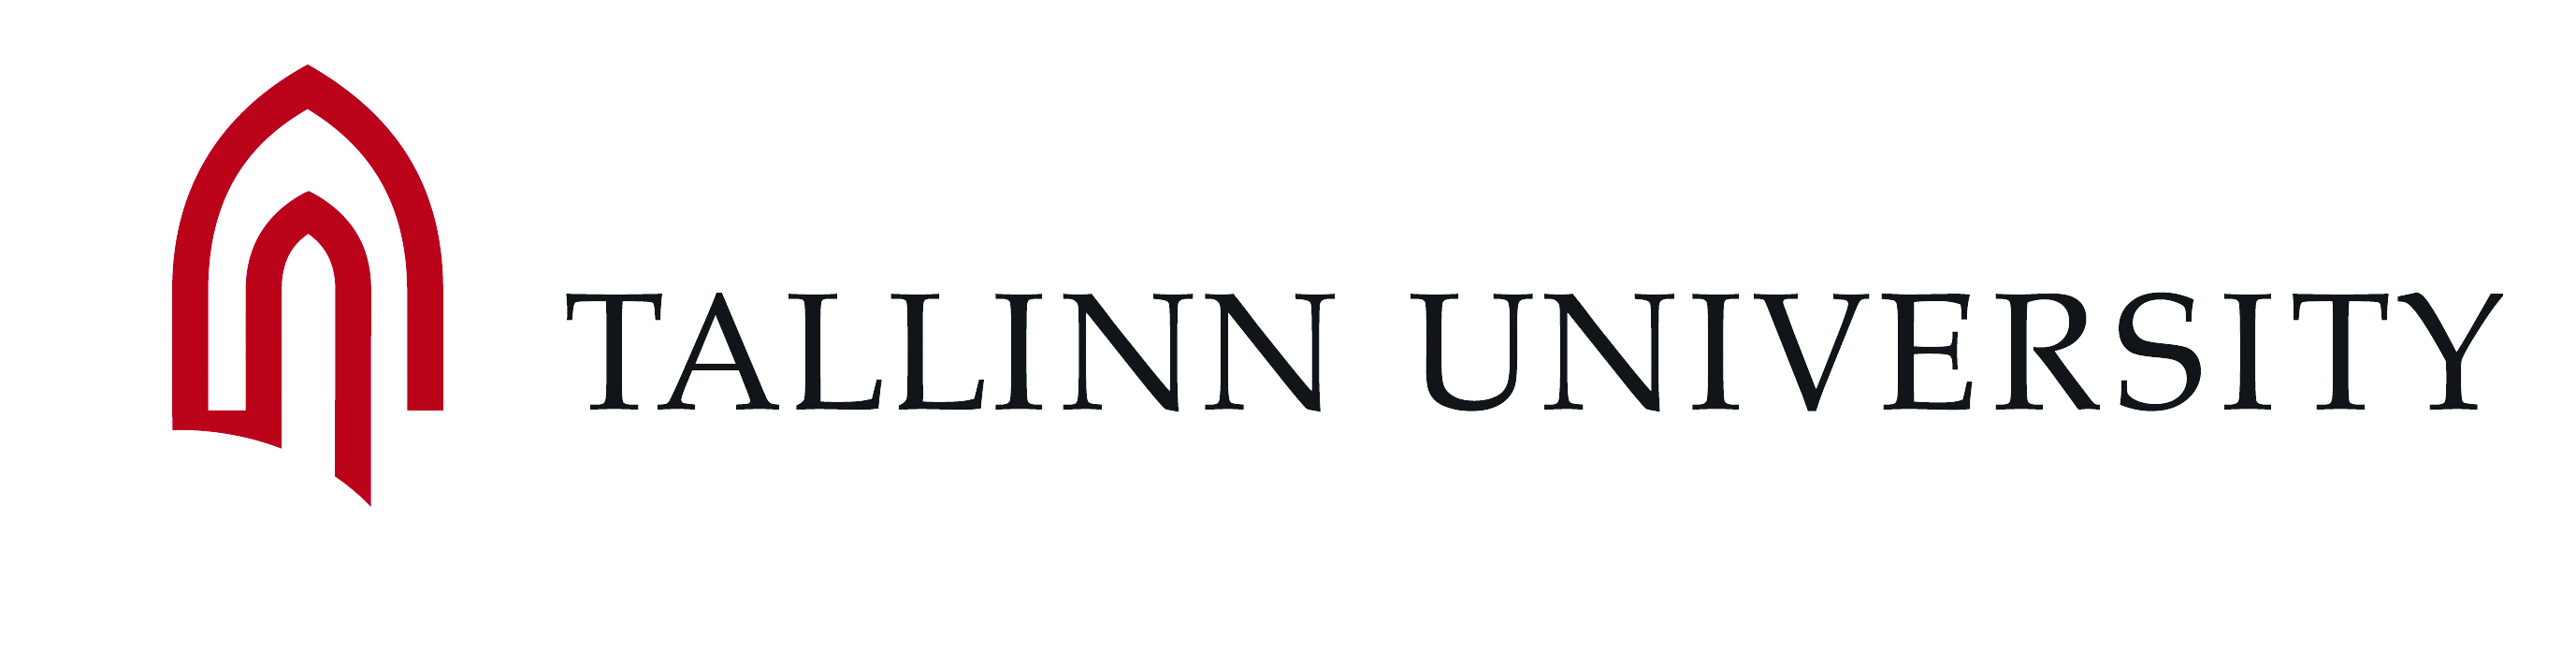 Tallinn_University_Logo_CMYK.jpg